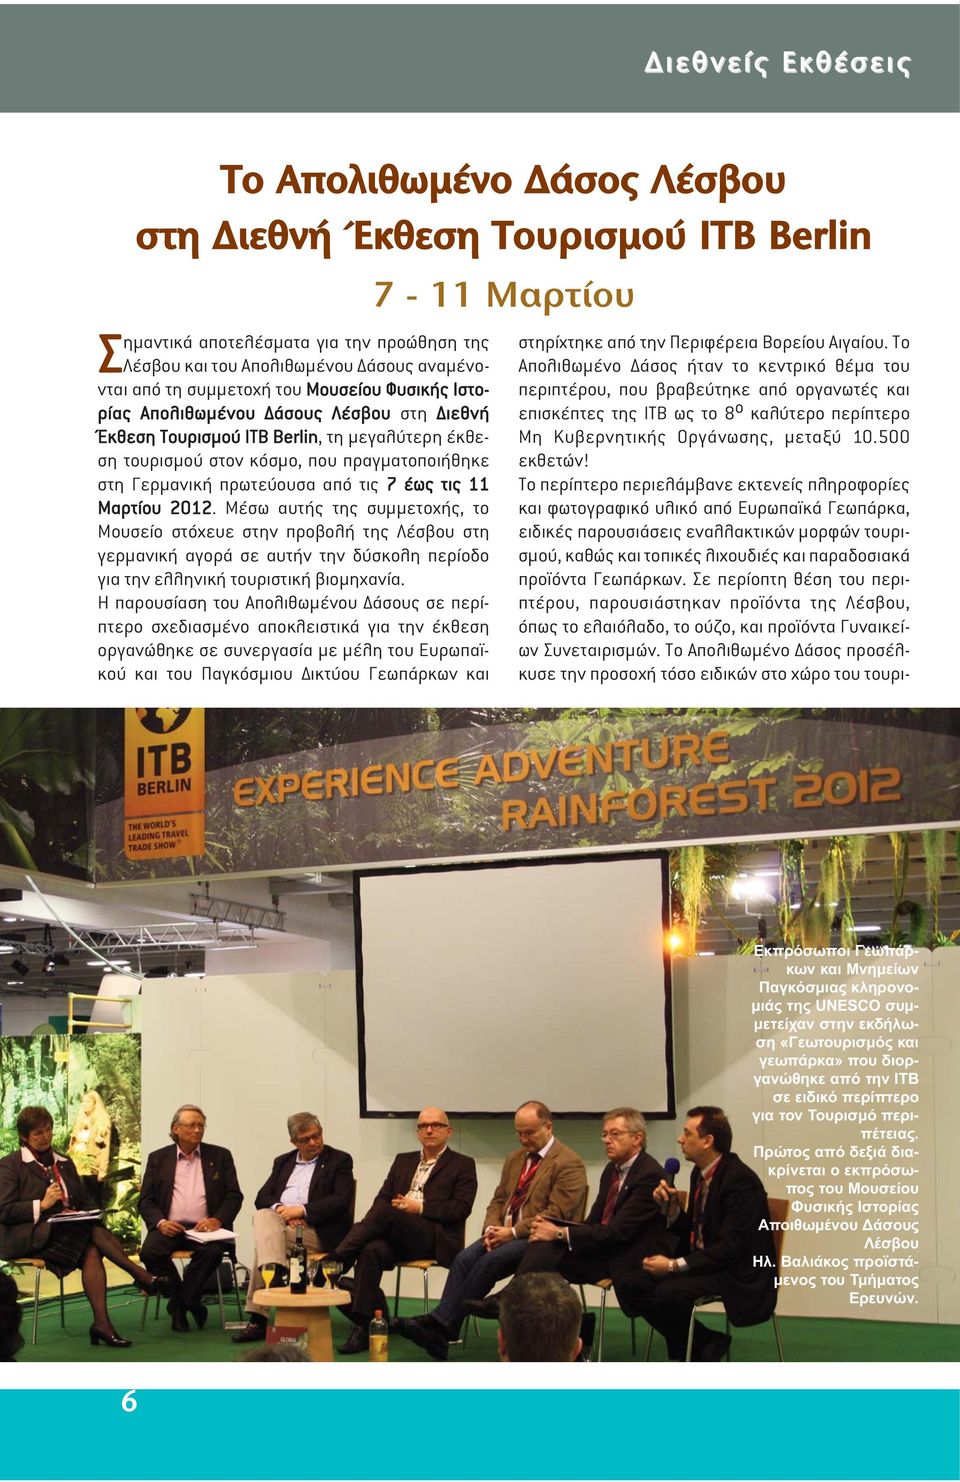 11 Μαρτίου 2012. Μέσω αυτής της συµµετοχής, το Μουσείο στόχευε στην προβολή της Λέσβου στη γερµανική αγορά σε αυτήν την δύσκολη περίοδο για την ελληνική τουριστική βιοµηχανία.